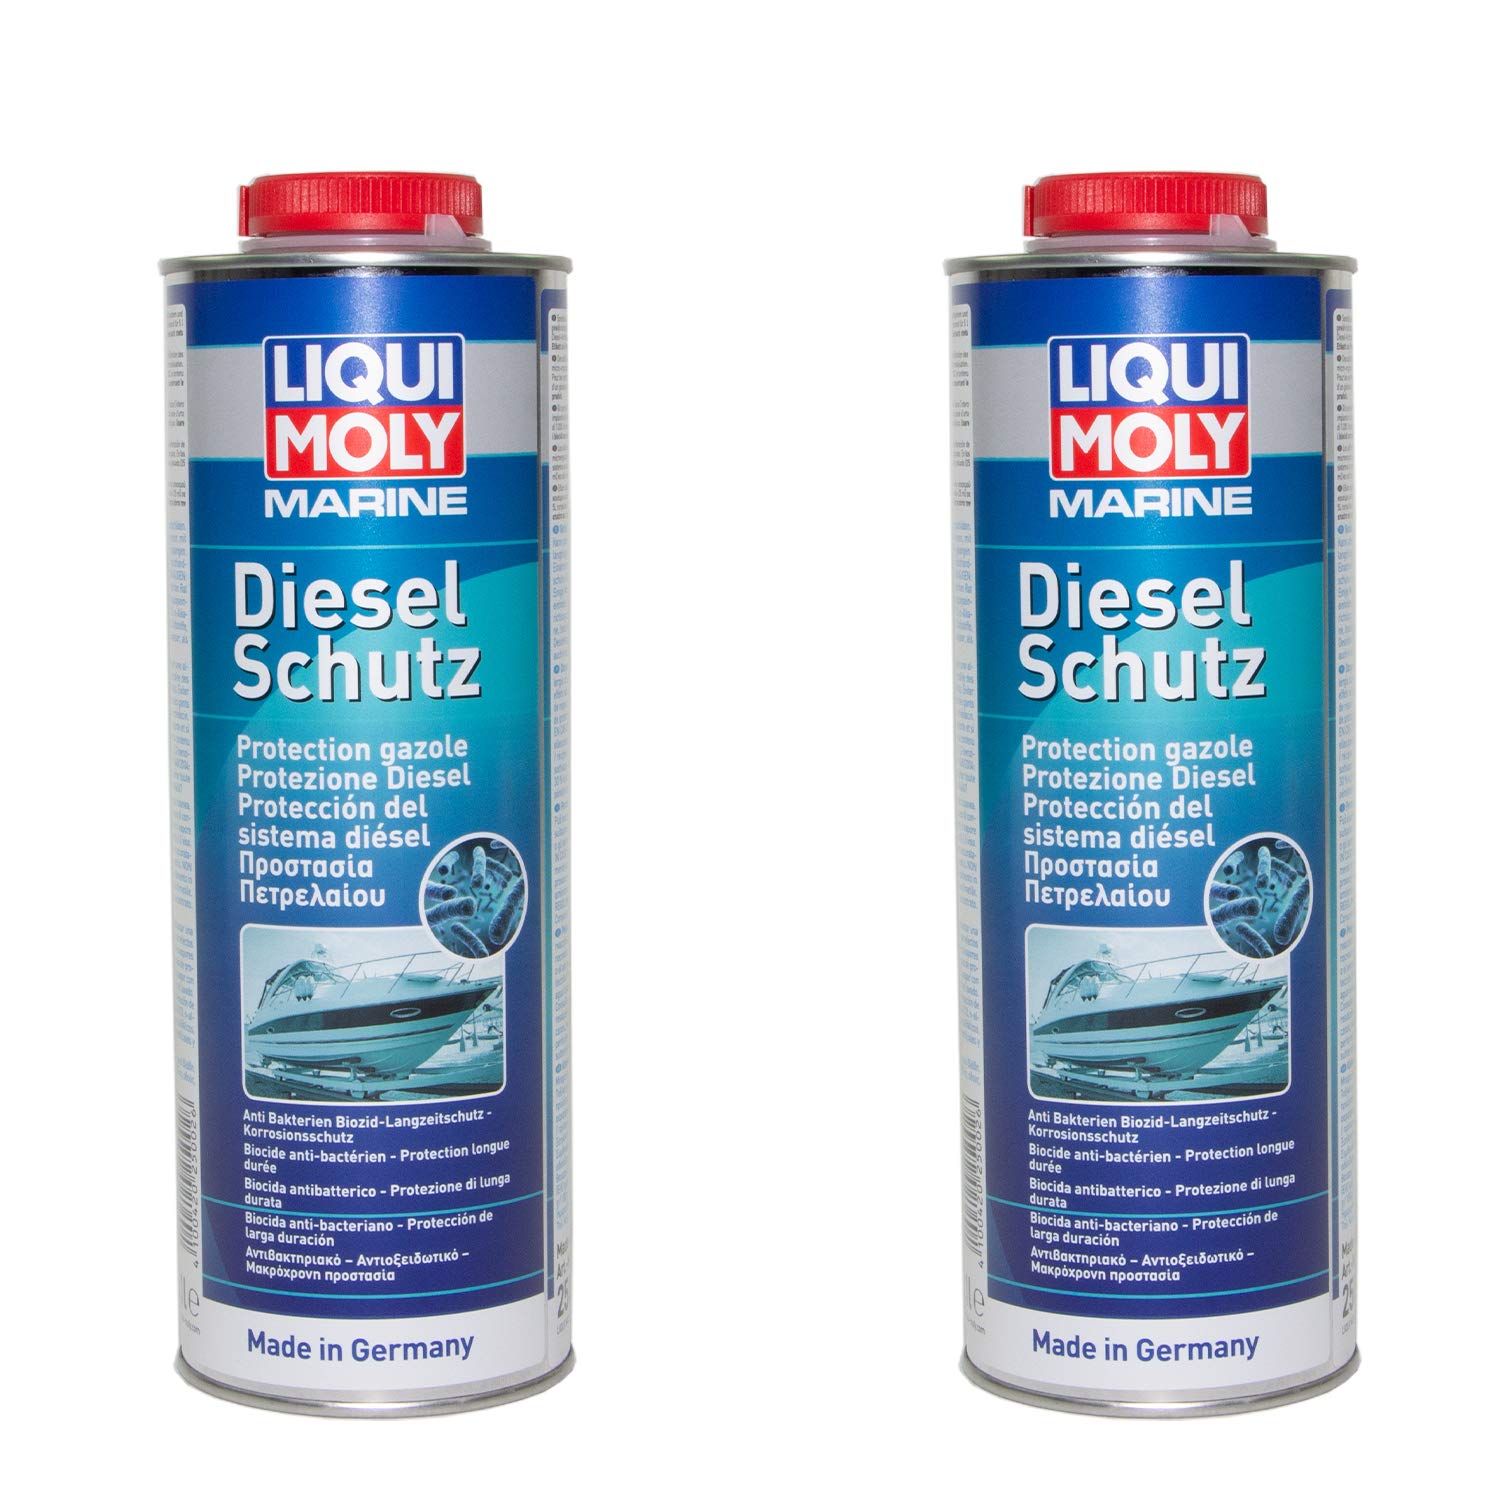 2 X 1 Liter LIQUI MOLY Dieselschutz Marine Diesel Schutz Additiv Dieselpest Stop von MVH Bockauf